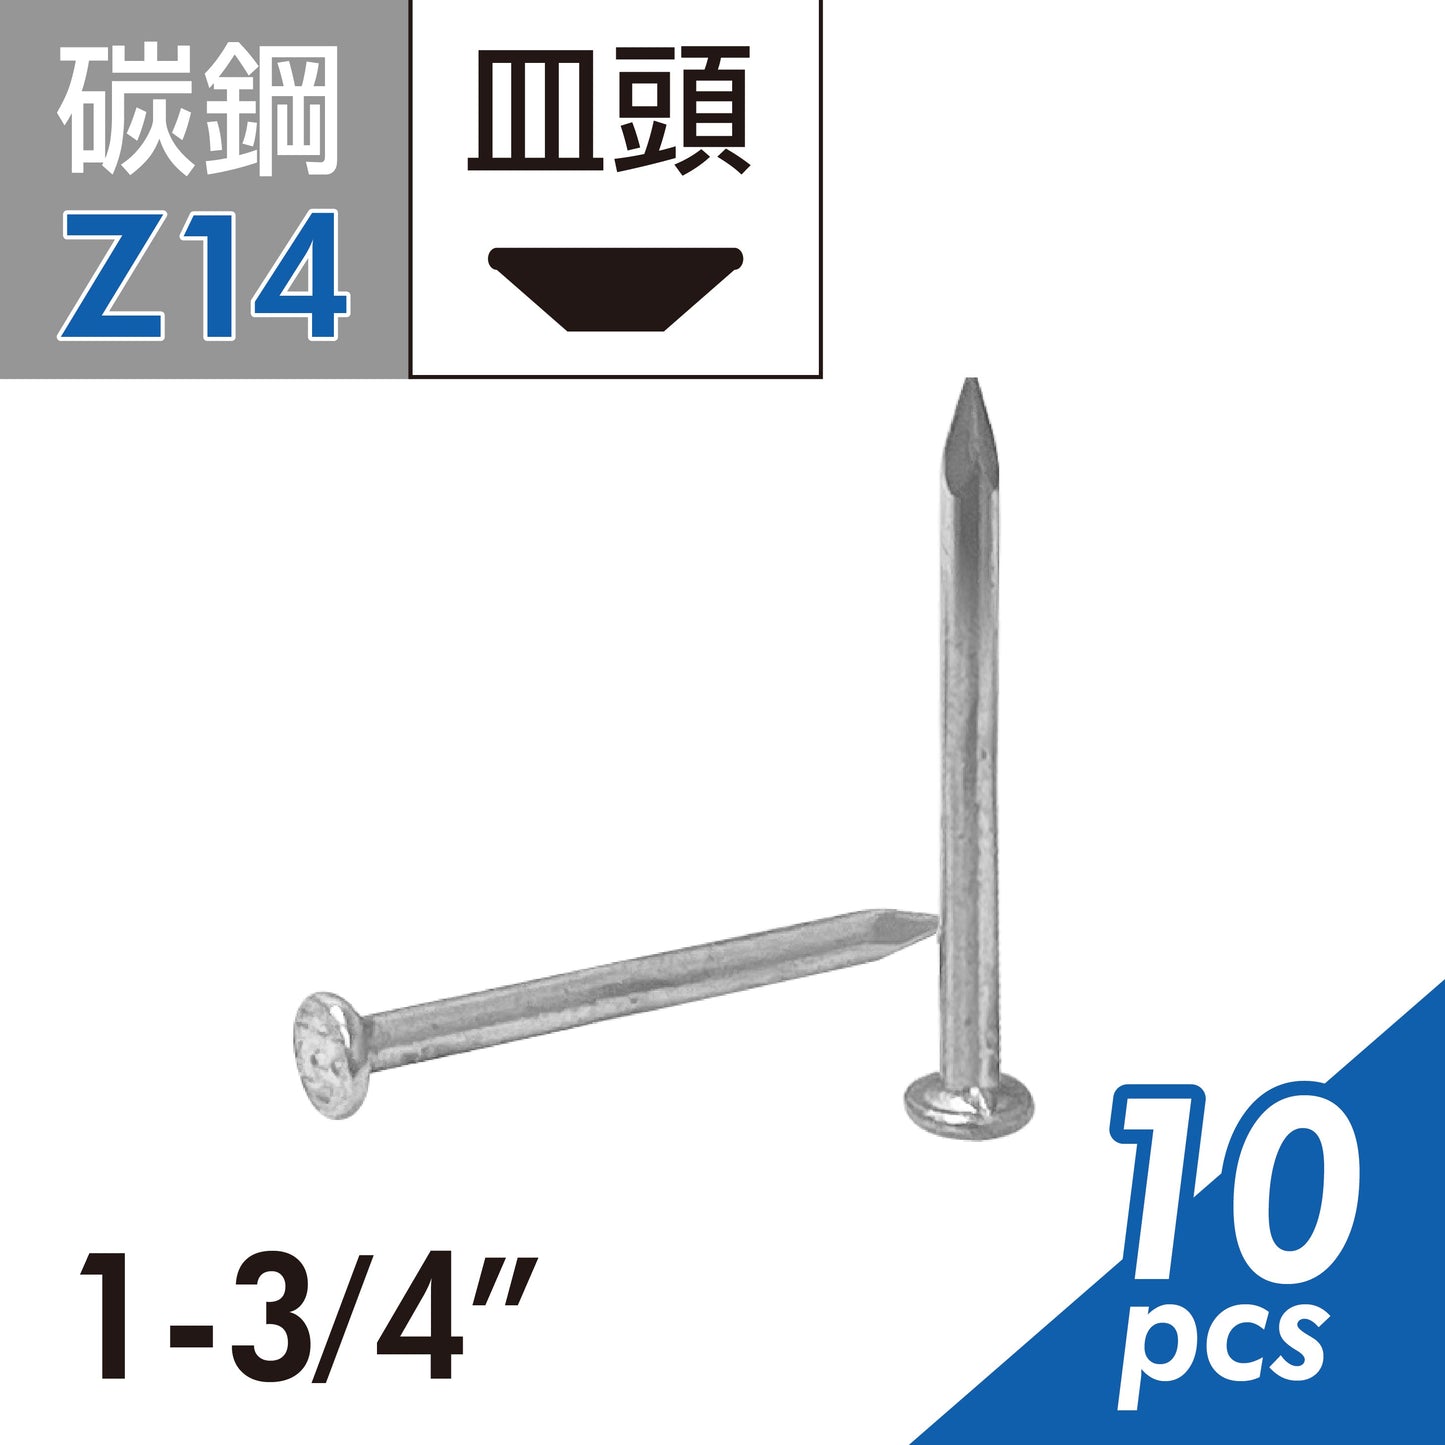 鐵釘 洋釘 木工釘子 建筑鐵釘 園釘 釘子 台灣製造 (E02D-Z14)